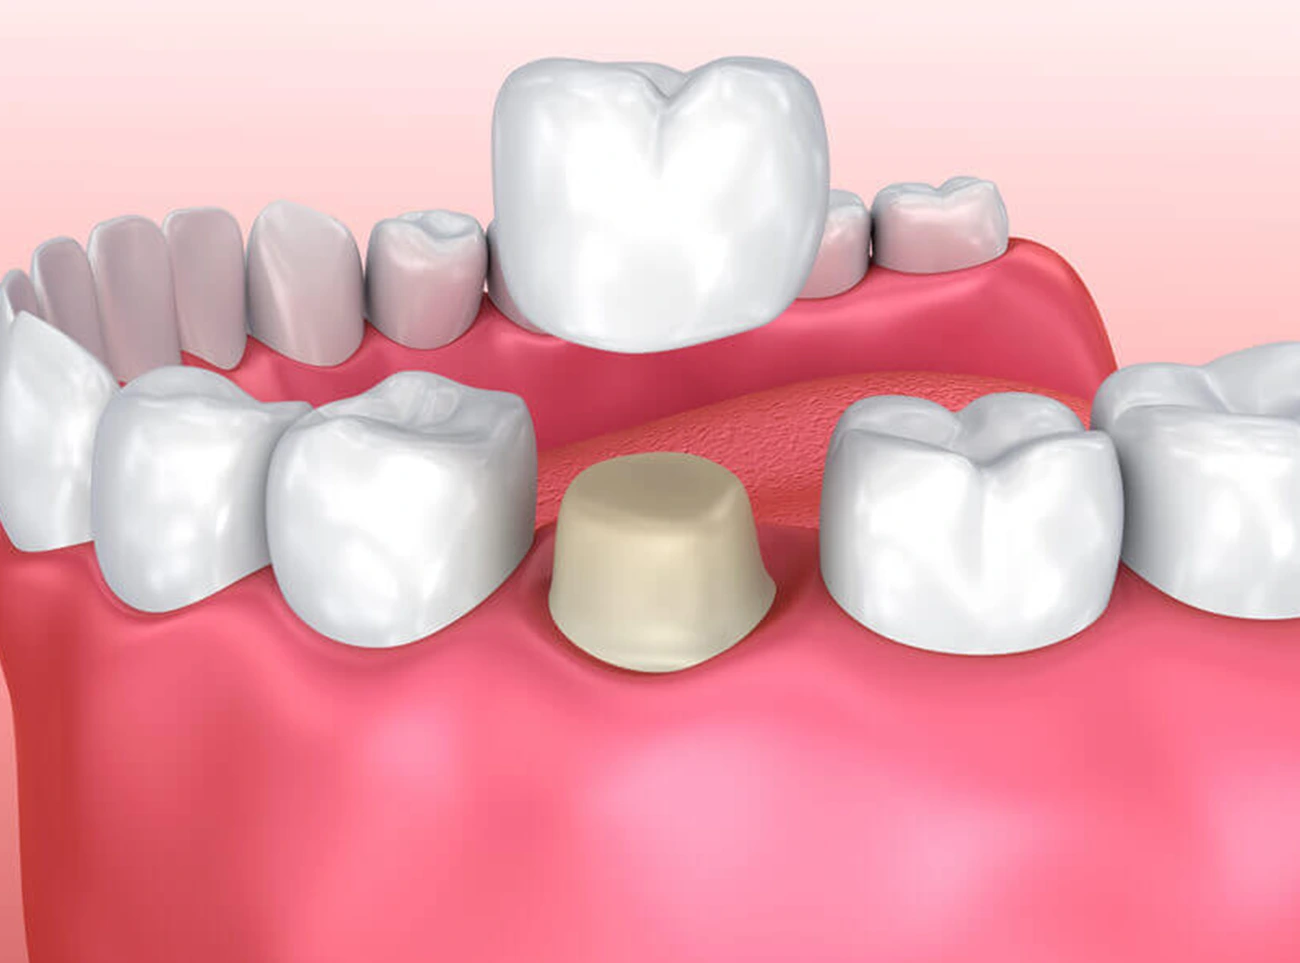 Corona dental, Tipos de coronas dentales